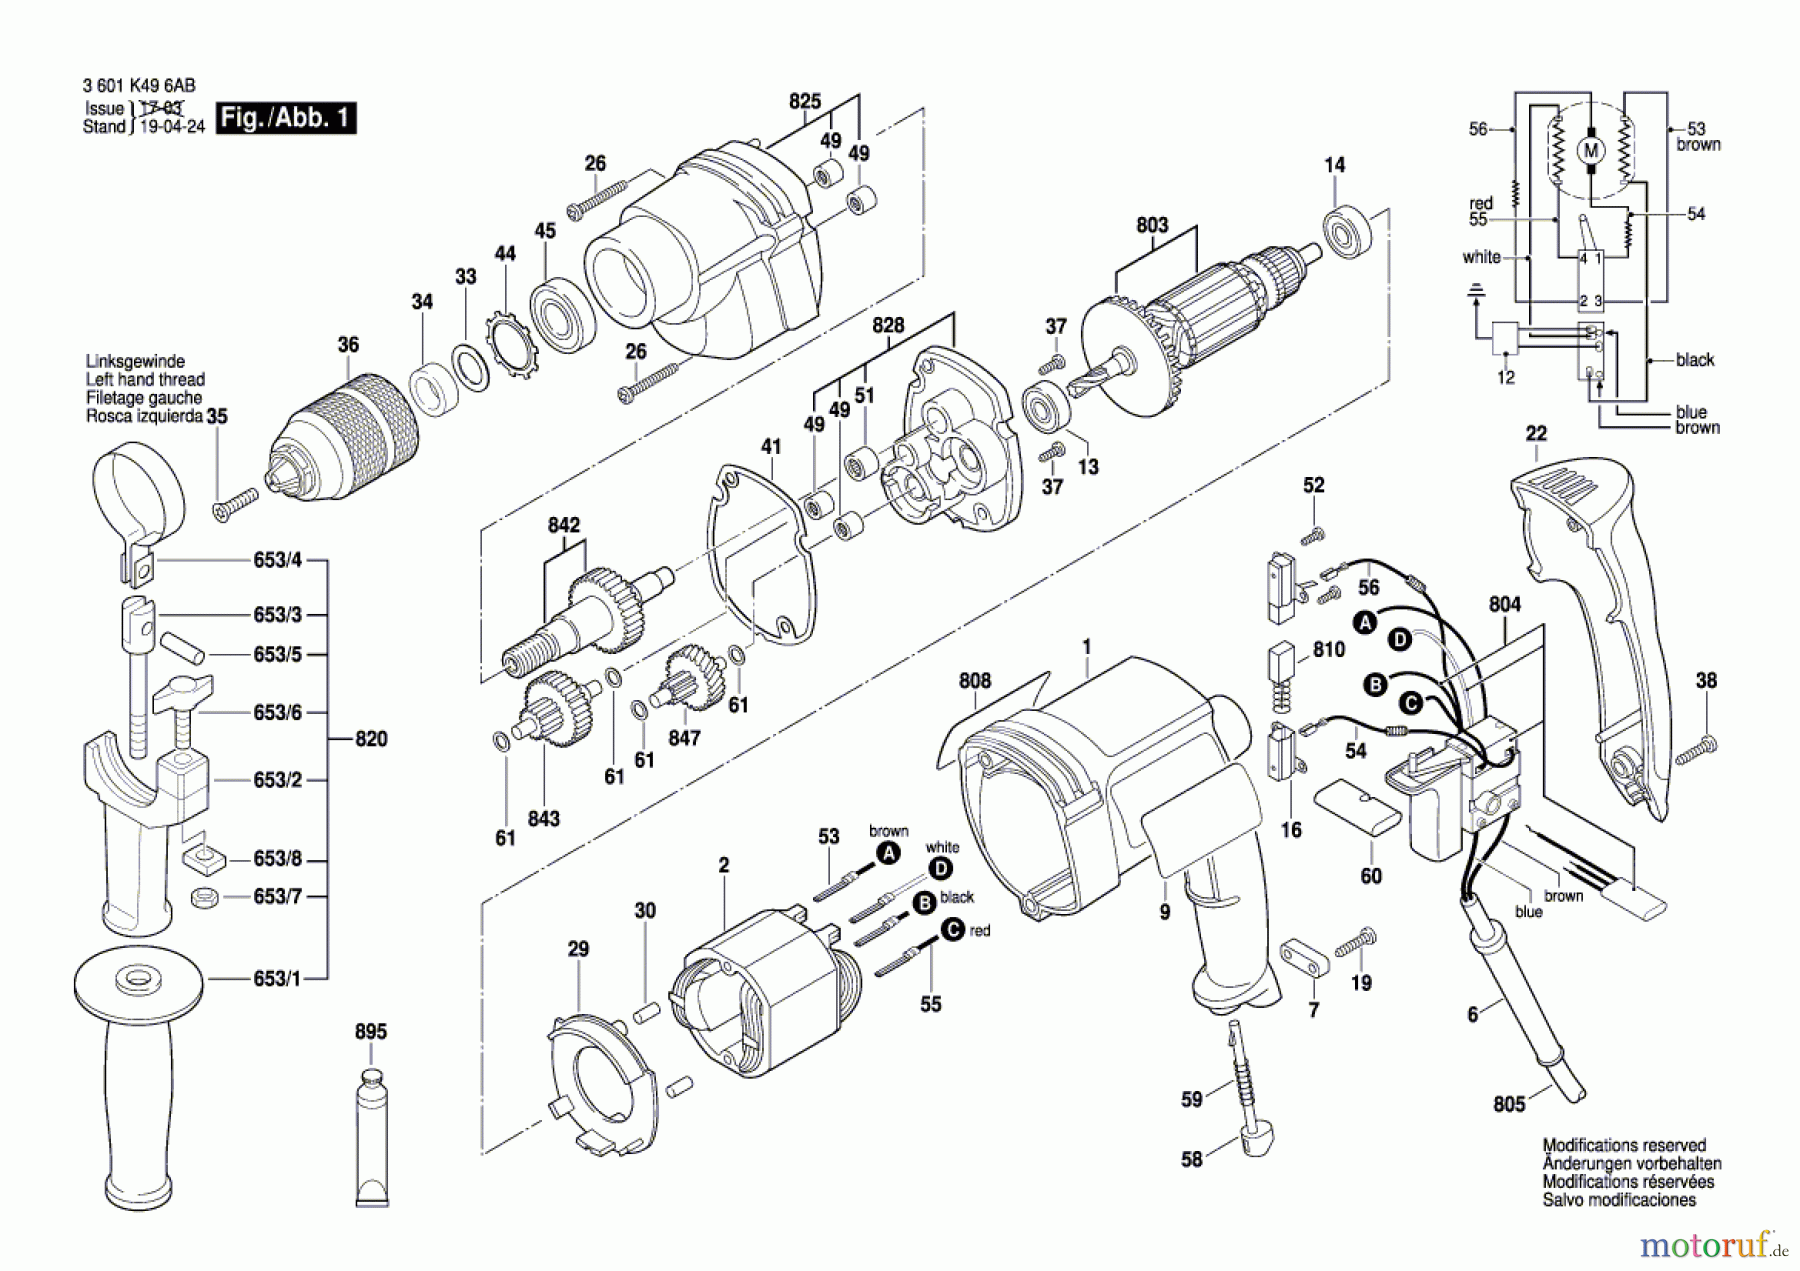  Bosch Werkzeug Bohrmaschine BRD-HT Seite 1